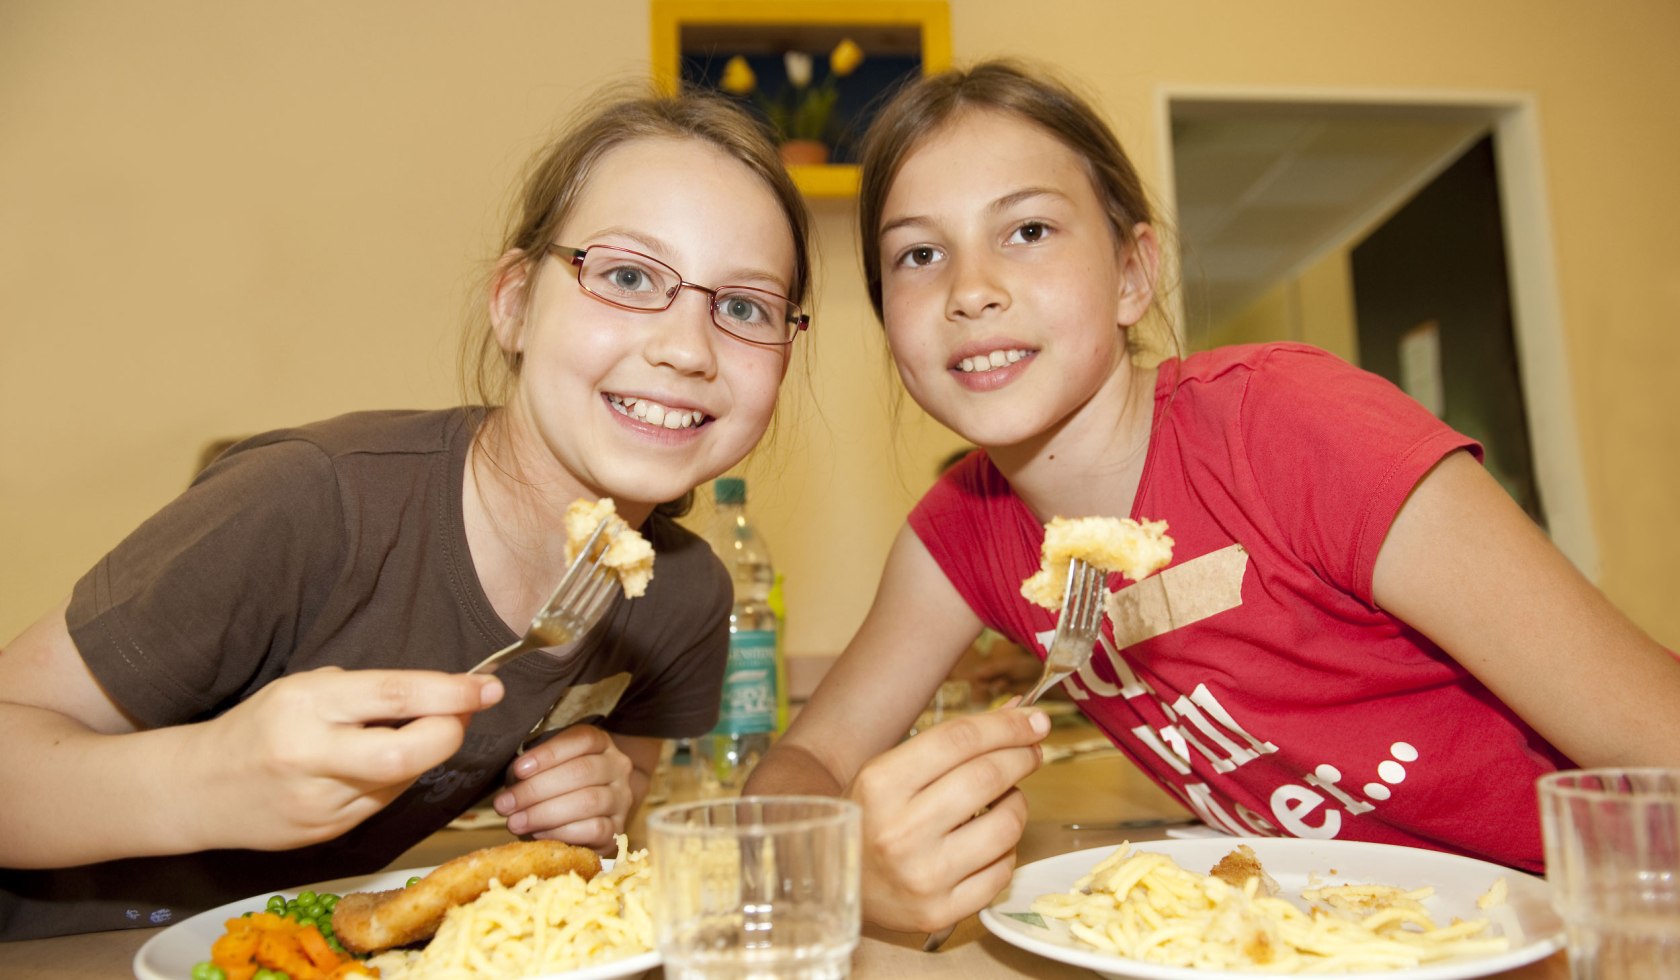 Mittagessen in der Jugendherberge, © DJH Landesverband Hannover e.V. / Thomas Langreder